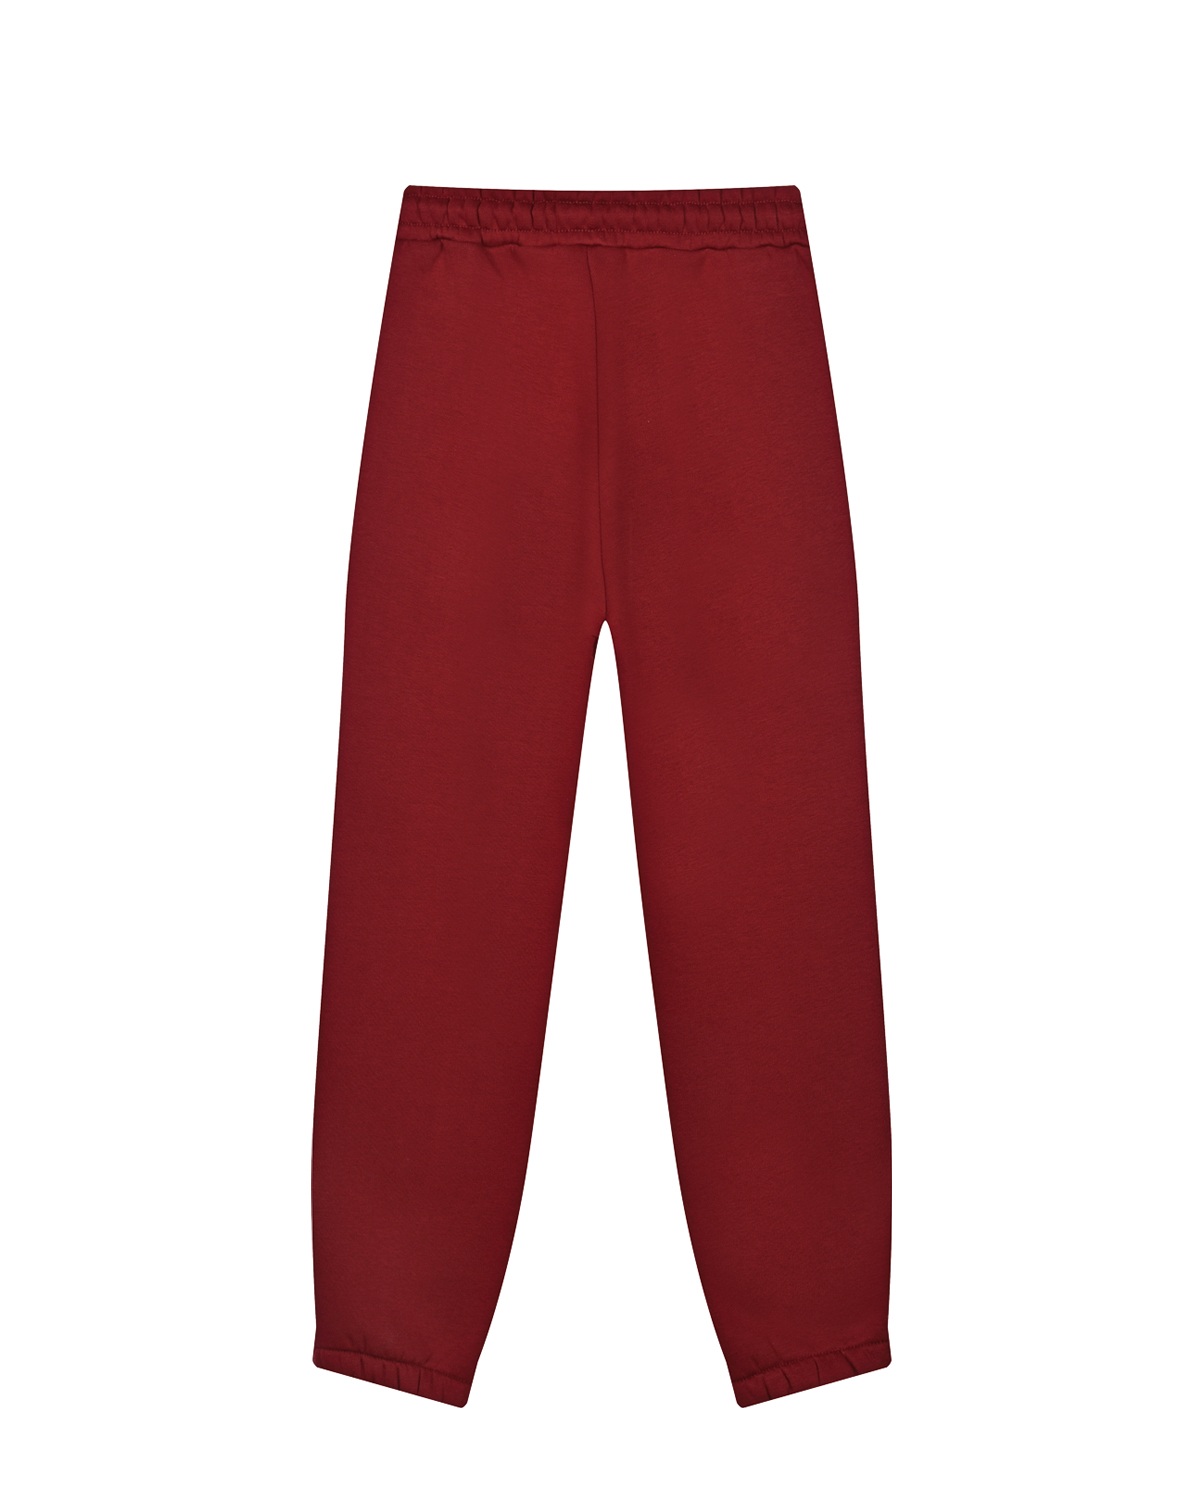 Бордовые спортивные брюки Dan Maralex детские, размер 164, цвет бордовый - фото 2